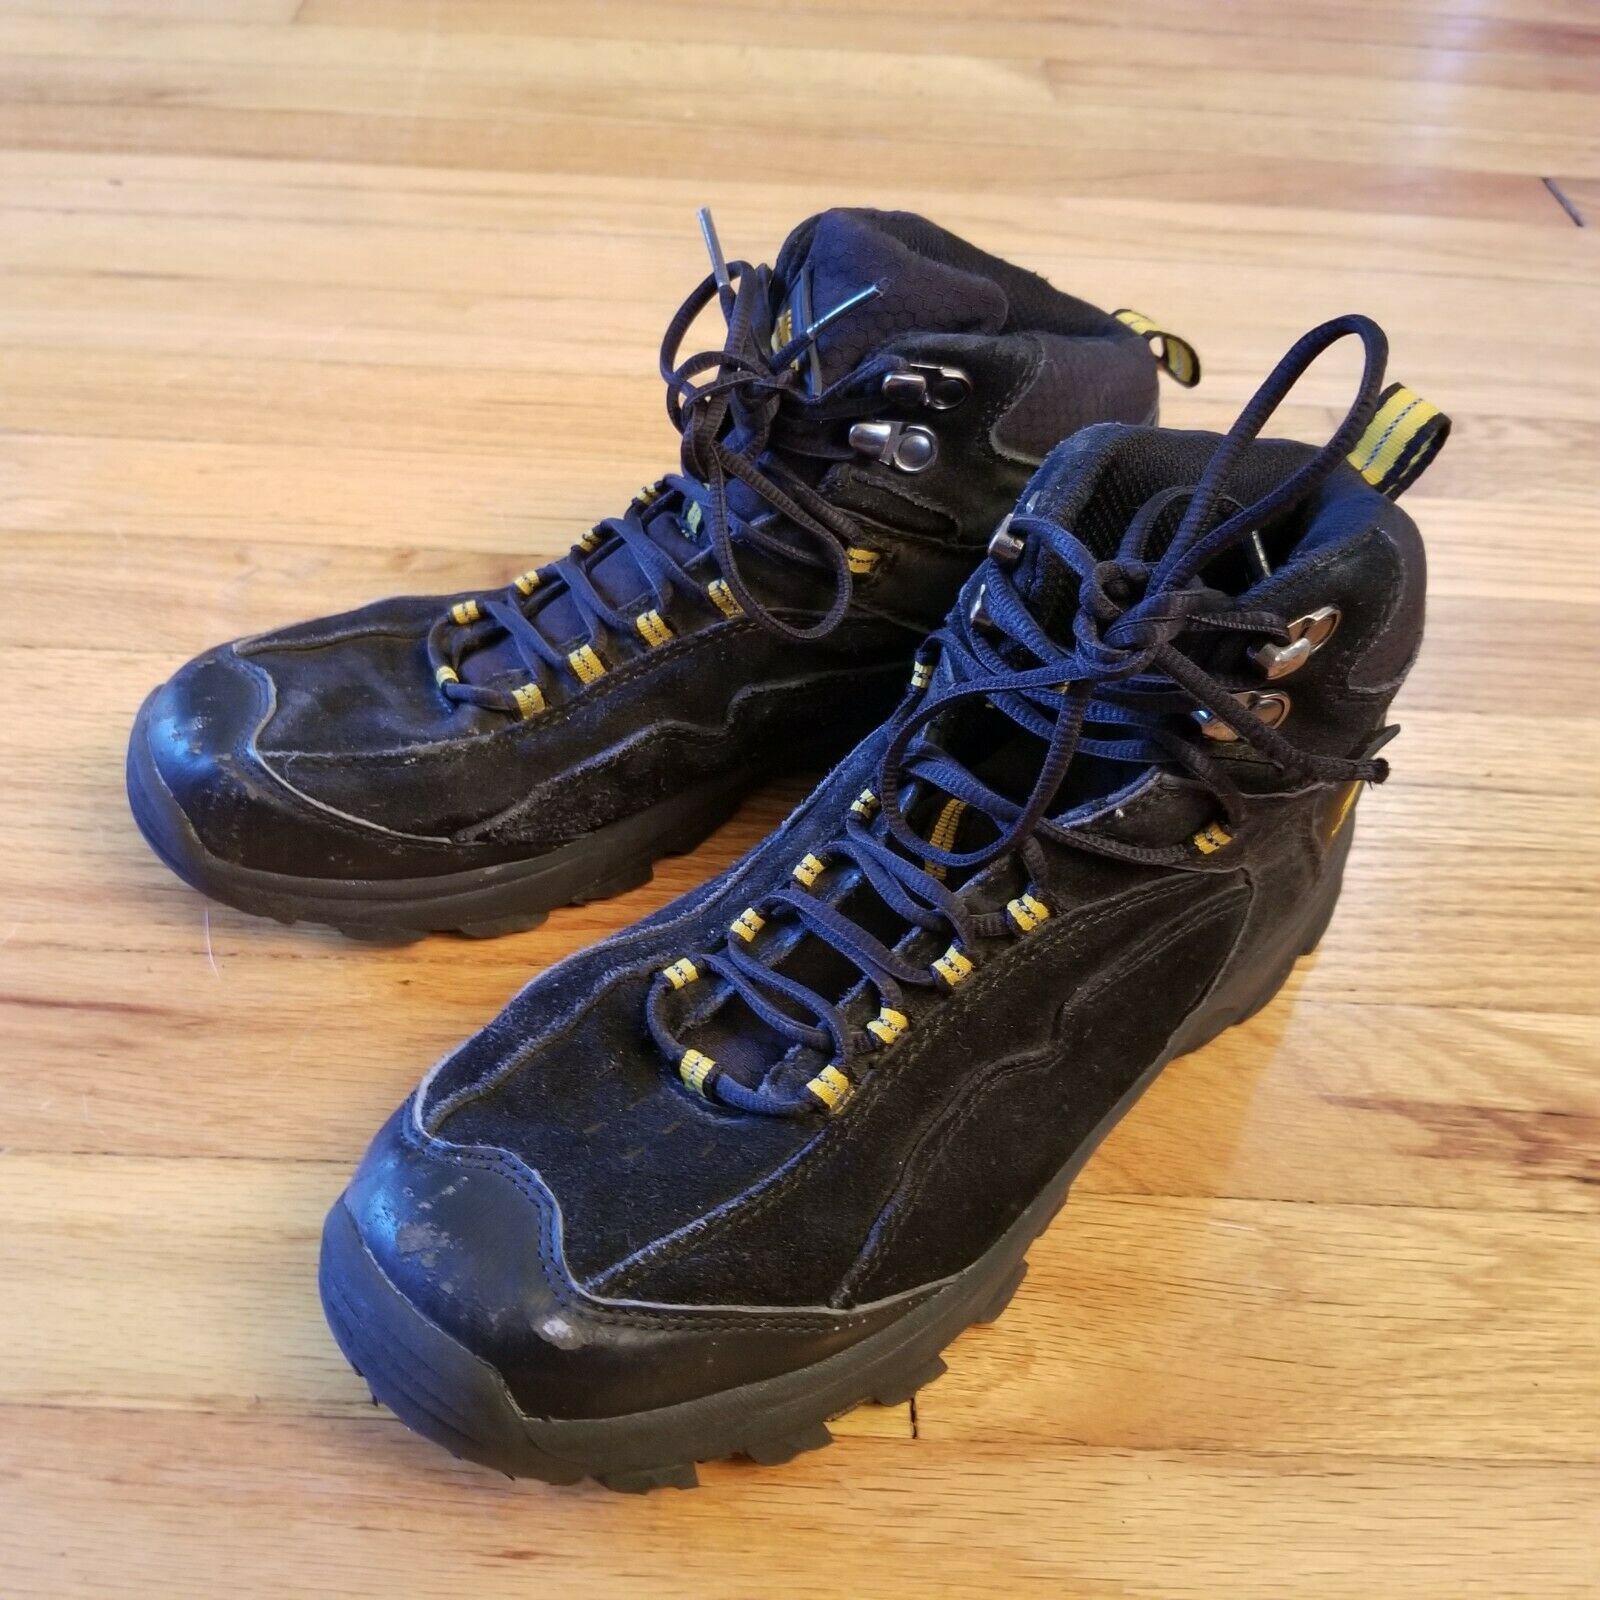 High Sierra Light Weight Hiking Trekking Mesh Boots Black US 8